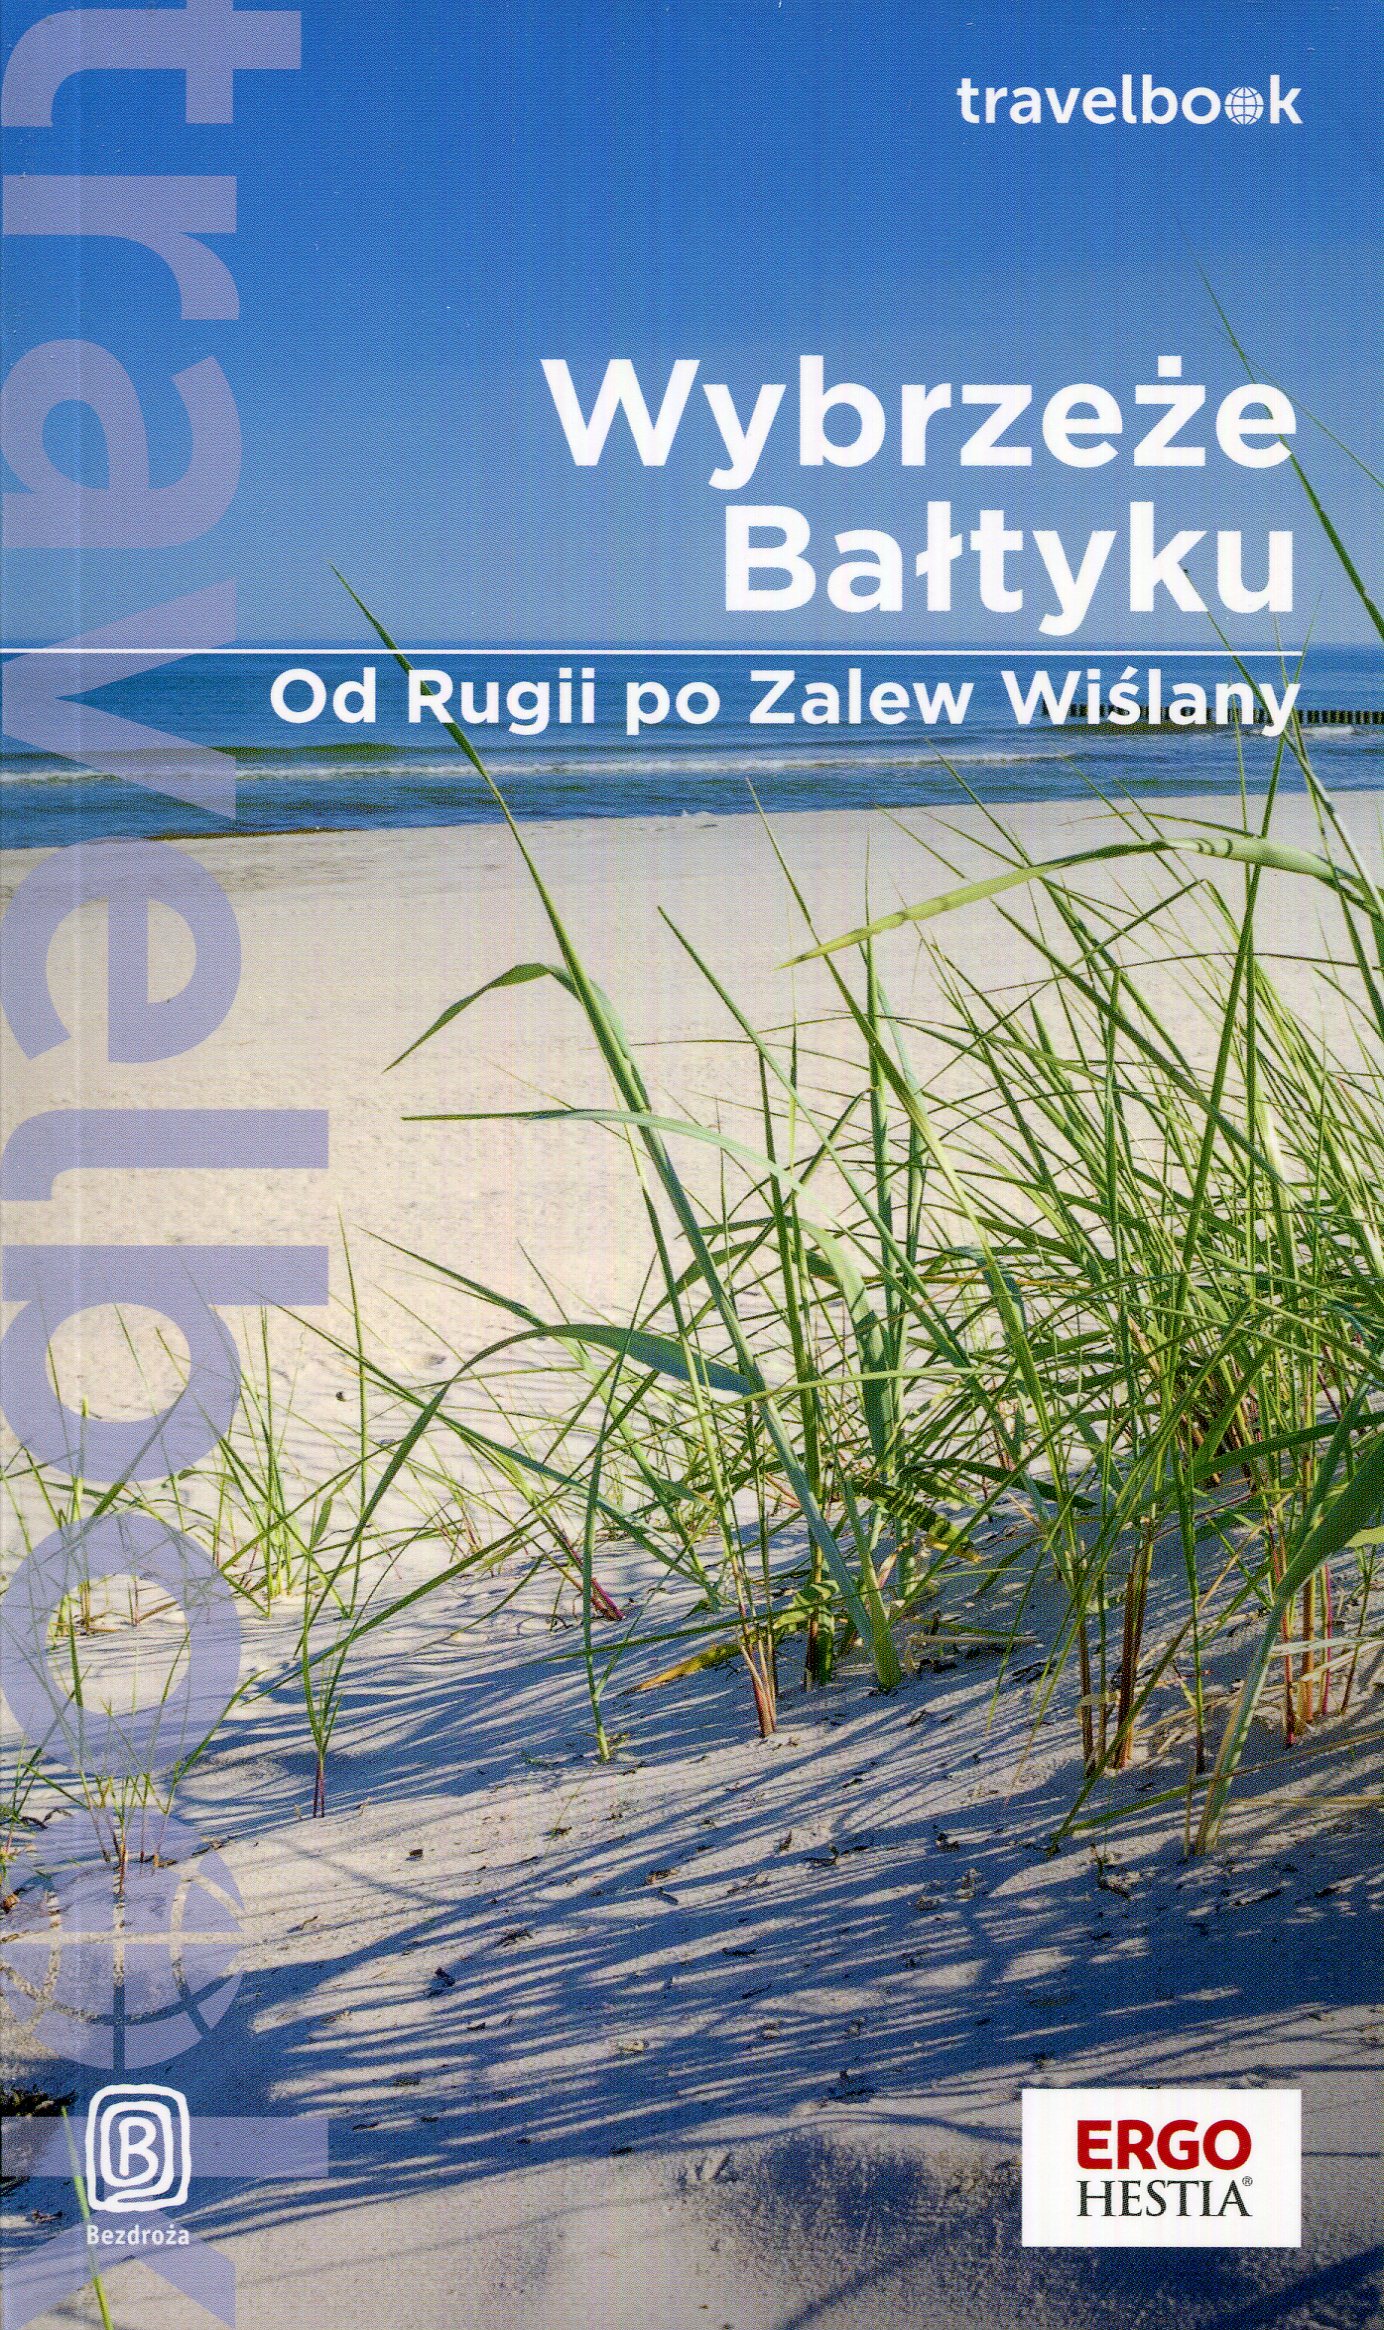 Okładka - Wybrzeże Bałtyku. Od Rugii po Zalew Wiślany. Travelbook